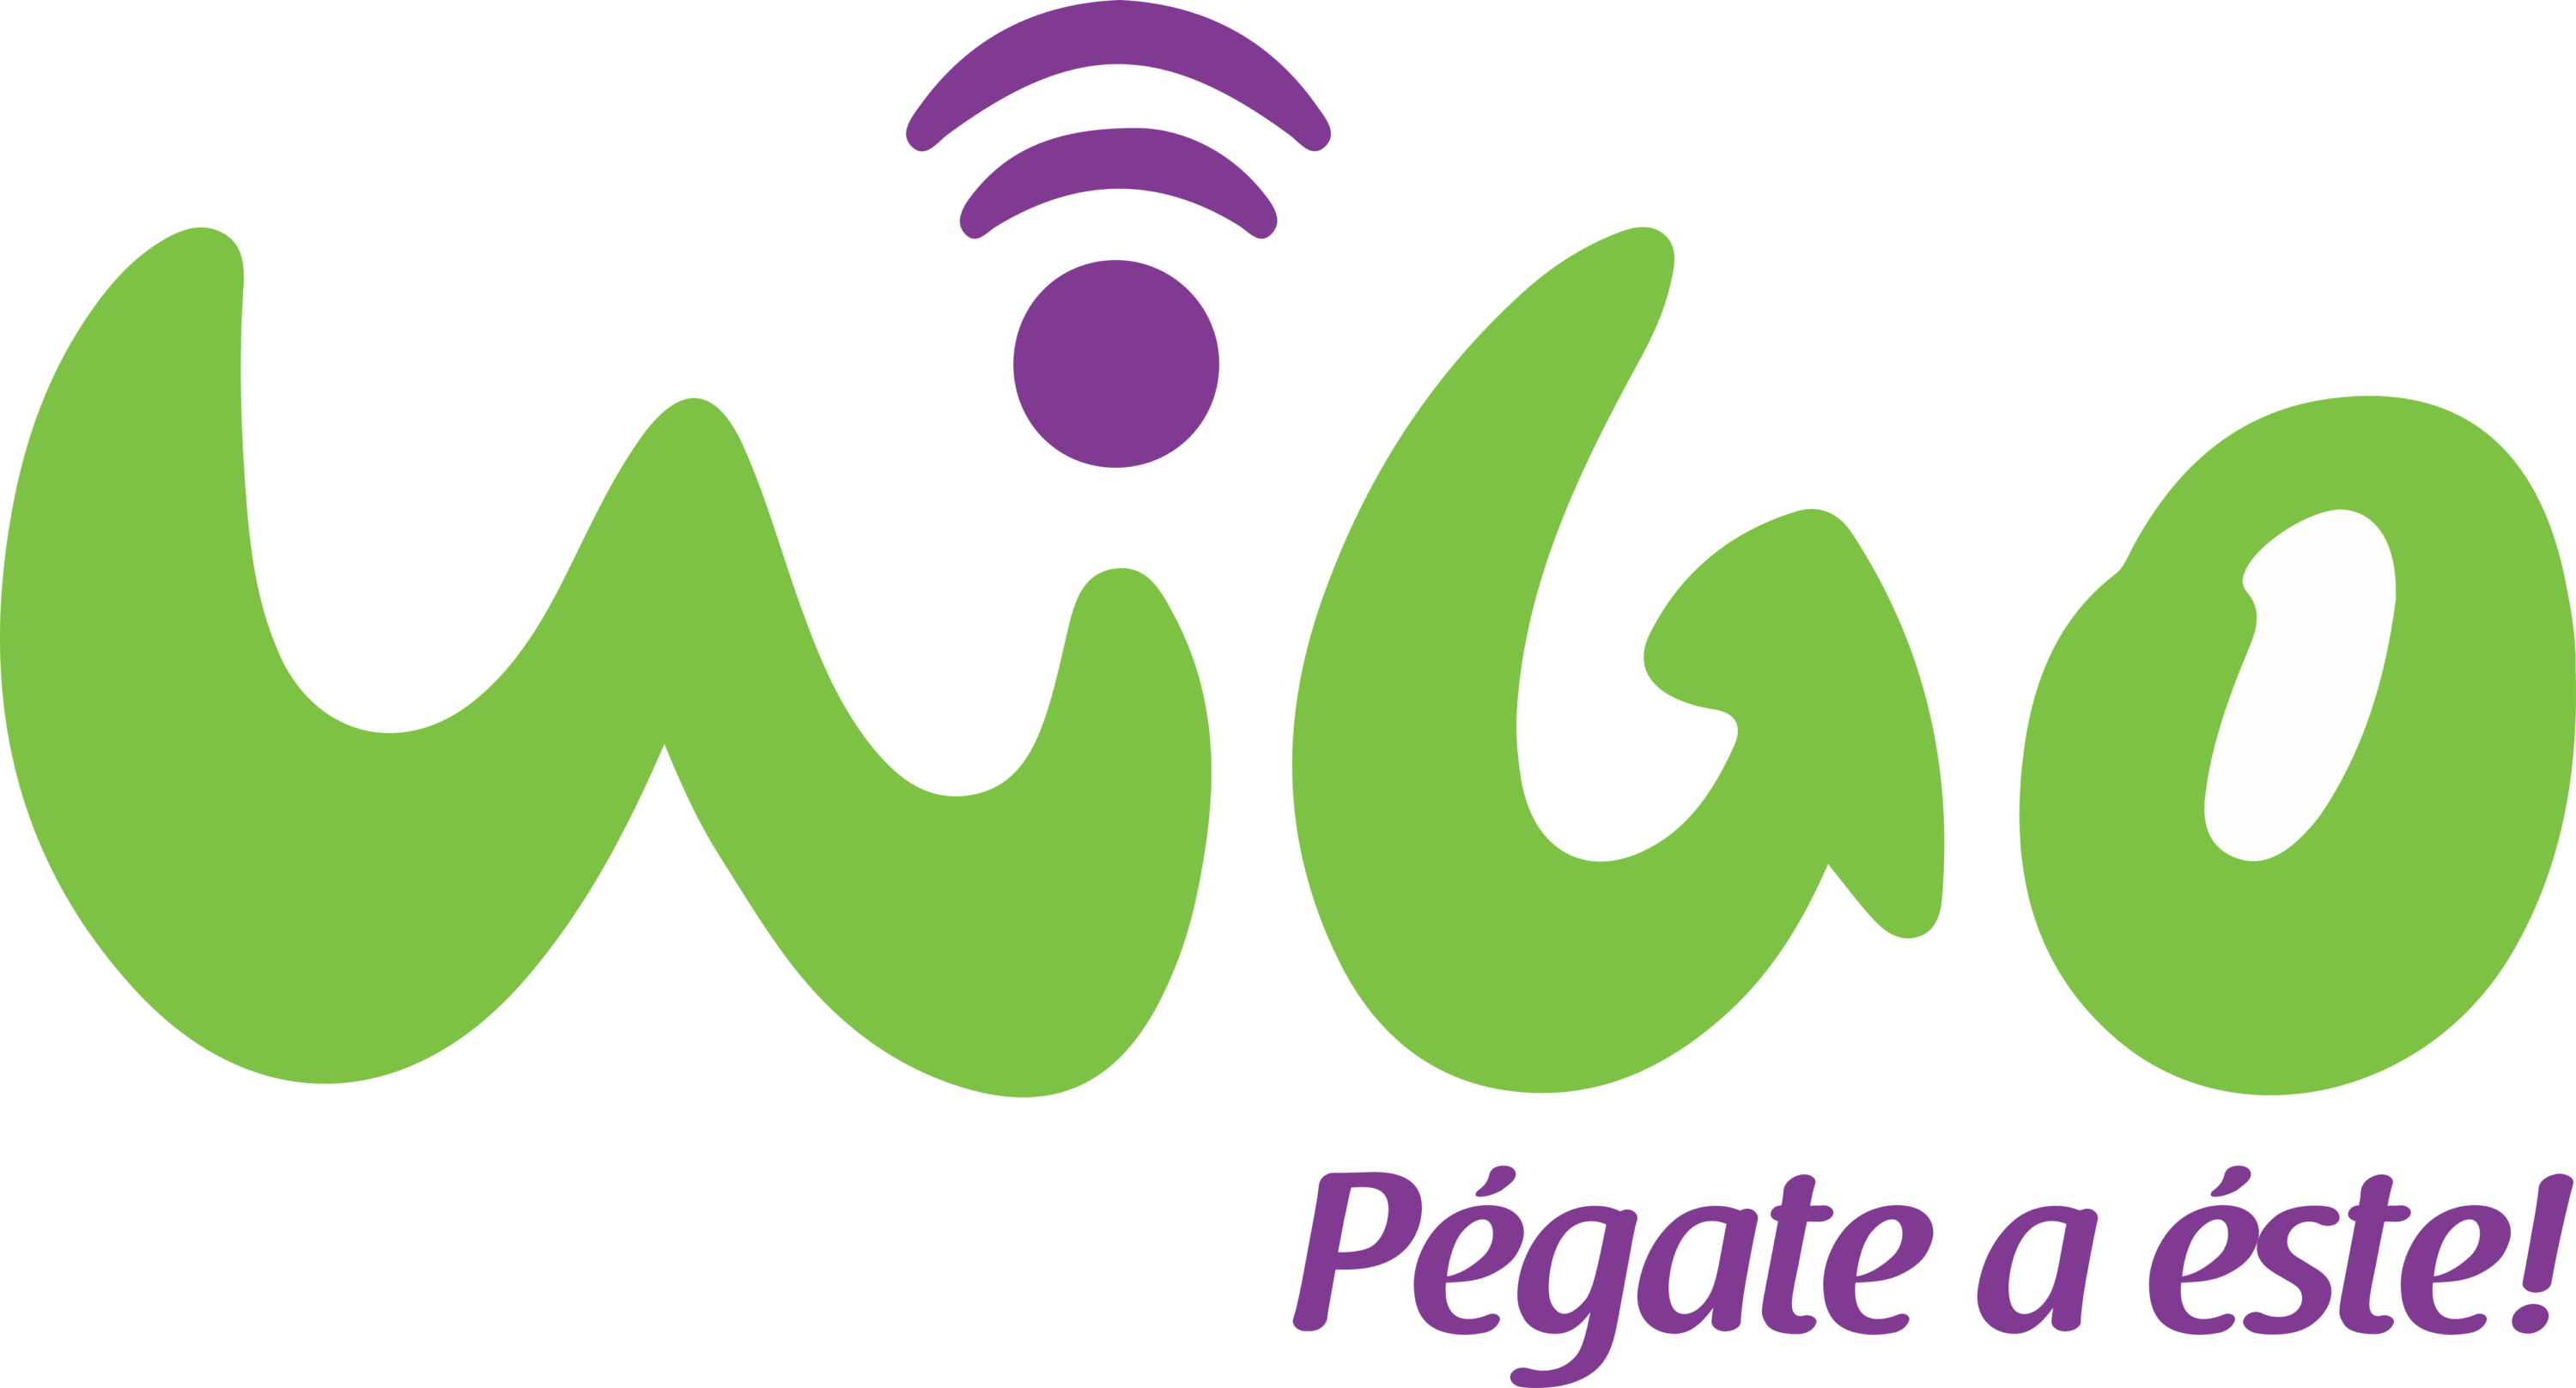 Wigo Logo